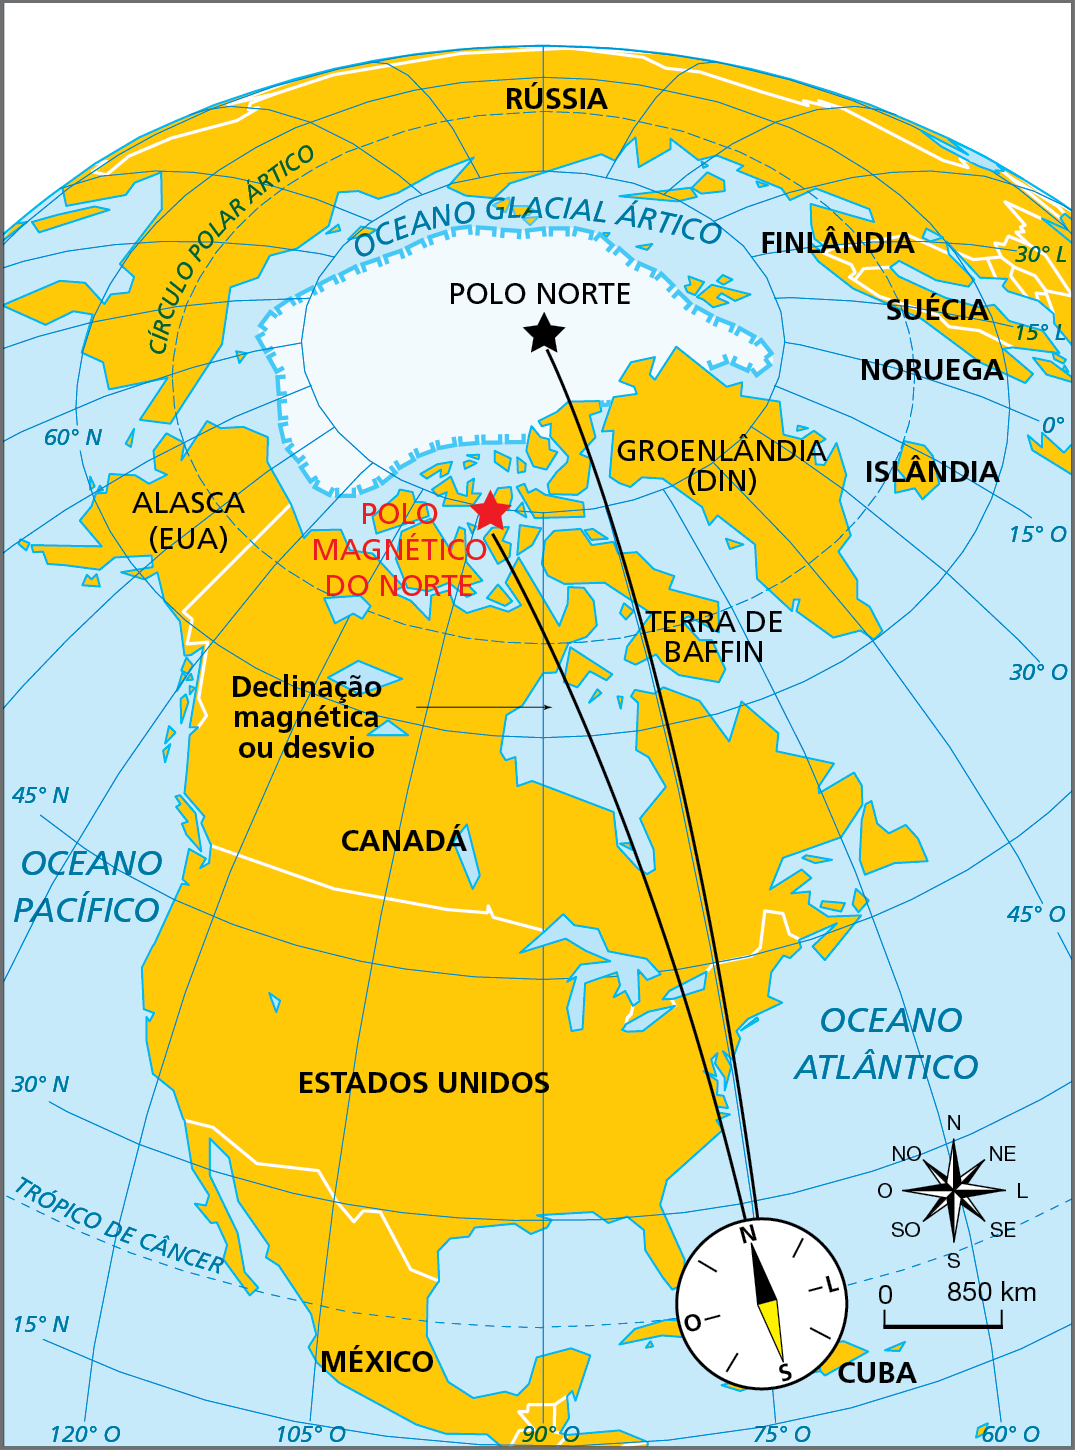 Mapa. O Polo Norte geográfico e o polo magnético do norte. Mapa da região ártica com destaque para o polo norte. Ao redor do polo norte estão representados o Oceano Glacial Ártico e os países Canadá, Estados Unidos, México, Cuba, Alasca (Estados Unidos), Groenlândia (Dinamarca), Islândia, Noruega, Suécia, Finlândia, Rússia. Sobre Cuba, no meridiano 75 graus oeste há a representação de uma bússola com um fio preto ligando-a a uma estrela preta representando o polo Norte. Na bússola, cujo Norte está levemente inclinado à esquerda, há outro fio preto na direção de uma estrela vermelha representando o Polo Magnético do Norte, que está um pouco mais embaixo do Polo Norte, sobre o paralelo de 90 graus norte e o meridiano 105 graus oeste. 
Na parte inferior do polo magnético, está indicada a declinação magnética ou desvio. Na lateral inferior direita, rosa dos ventos e escala de 0 a 850 quilômetros.